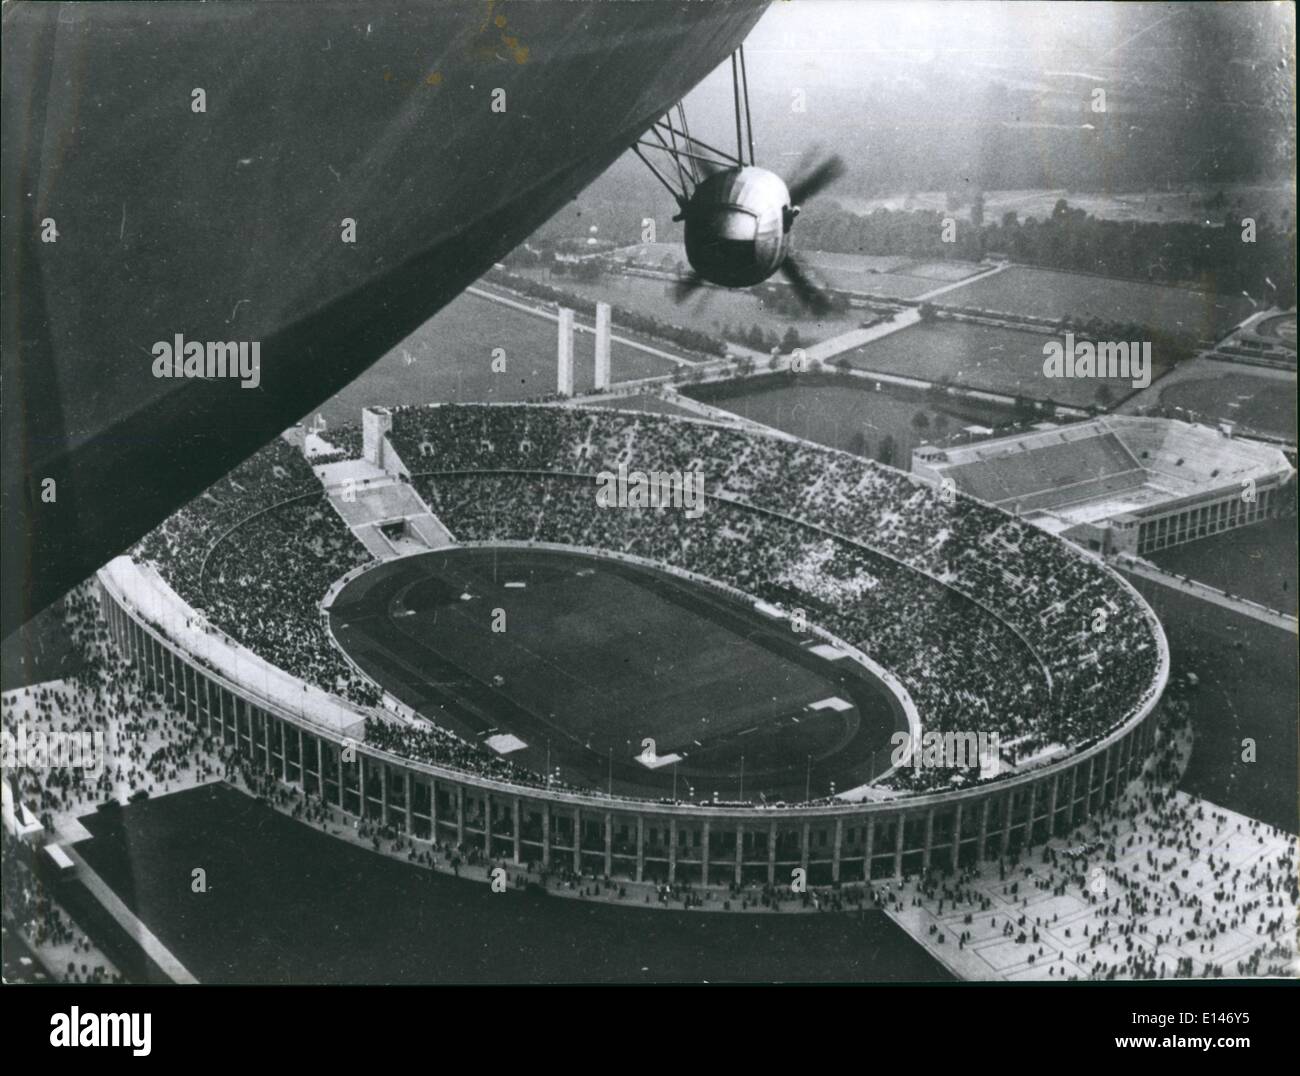 16 avril 2012 - Berlin - Jeux Olympiques 1936 : vue aérienne prise de l'Allemand zeppelin Hindenburg du Stade Olympique de Berlin pendant les Jeux Olympiques. L'Hiddenburg a explosé au New Jersey un an plus tard Banque D'Images